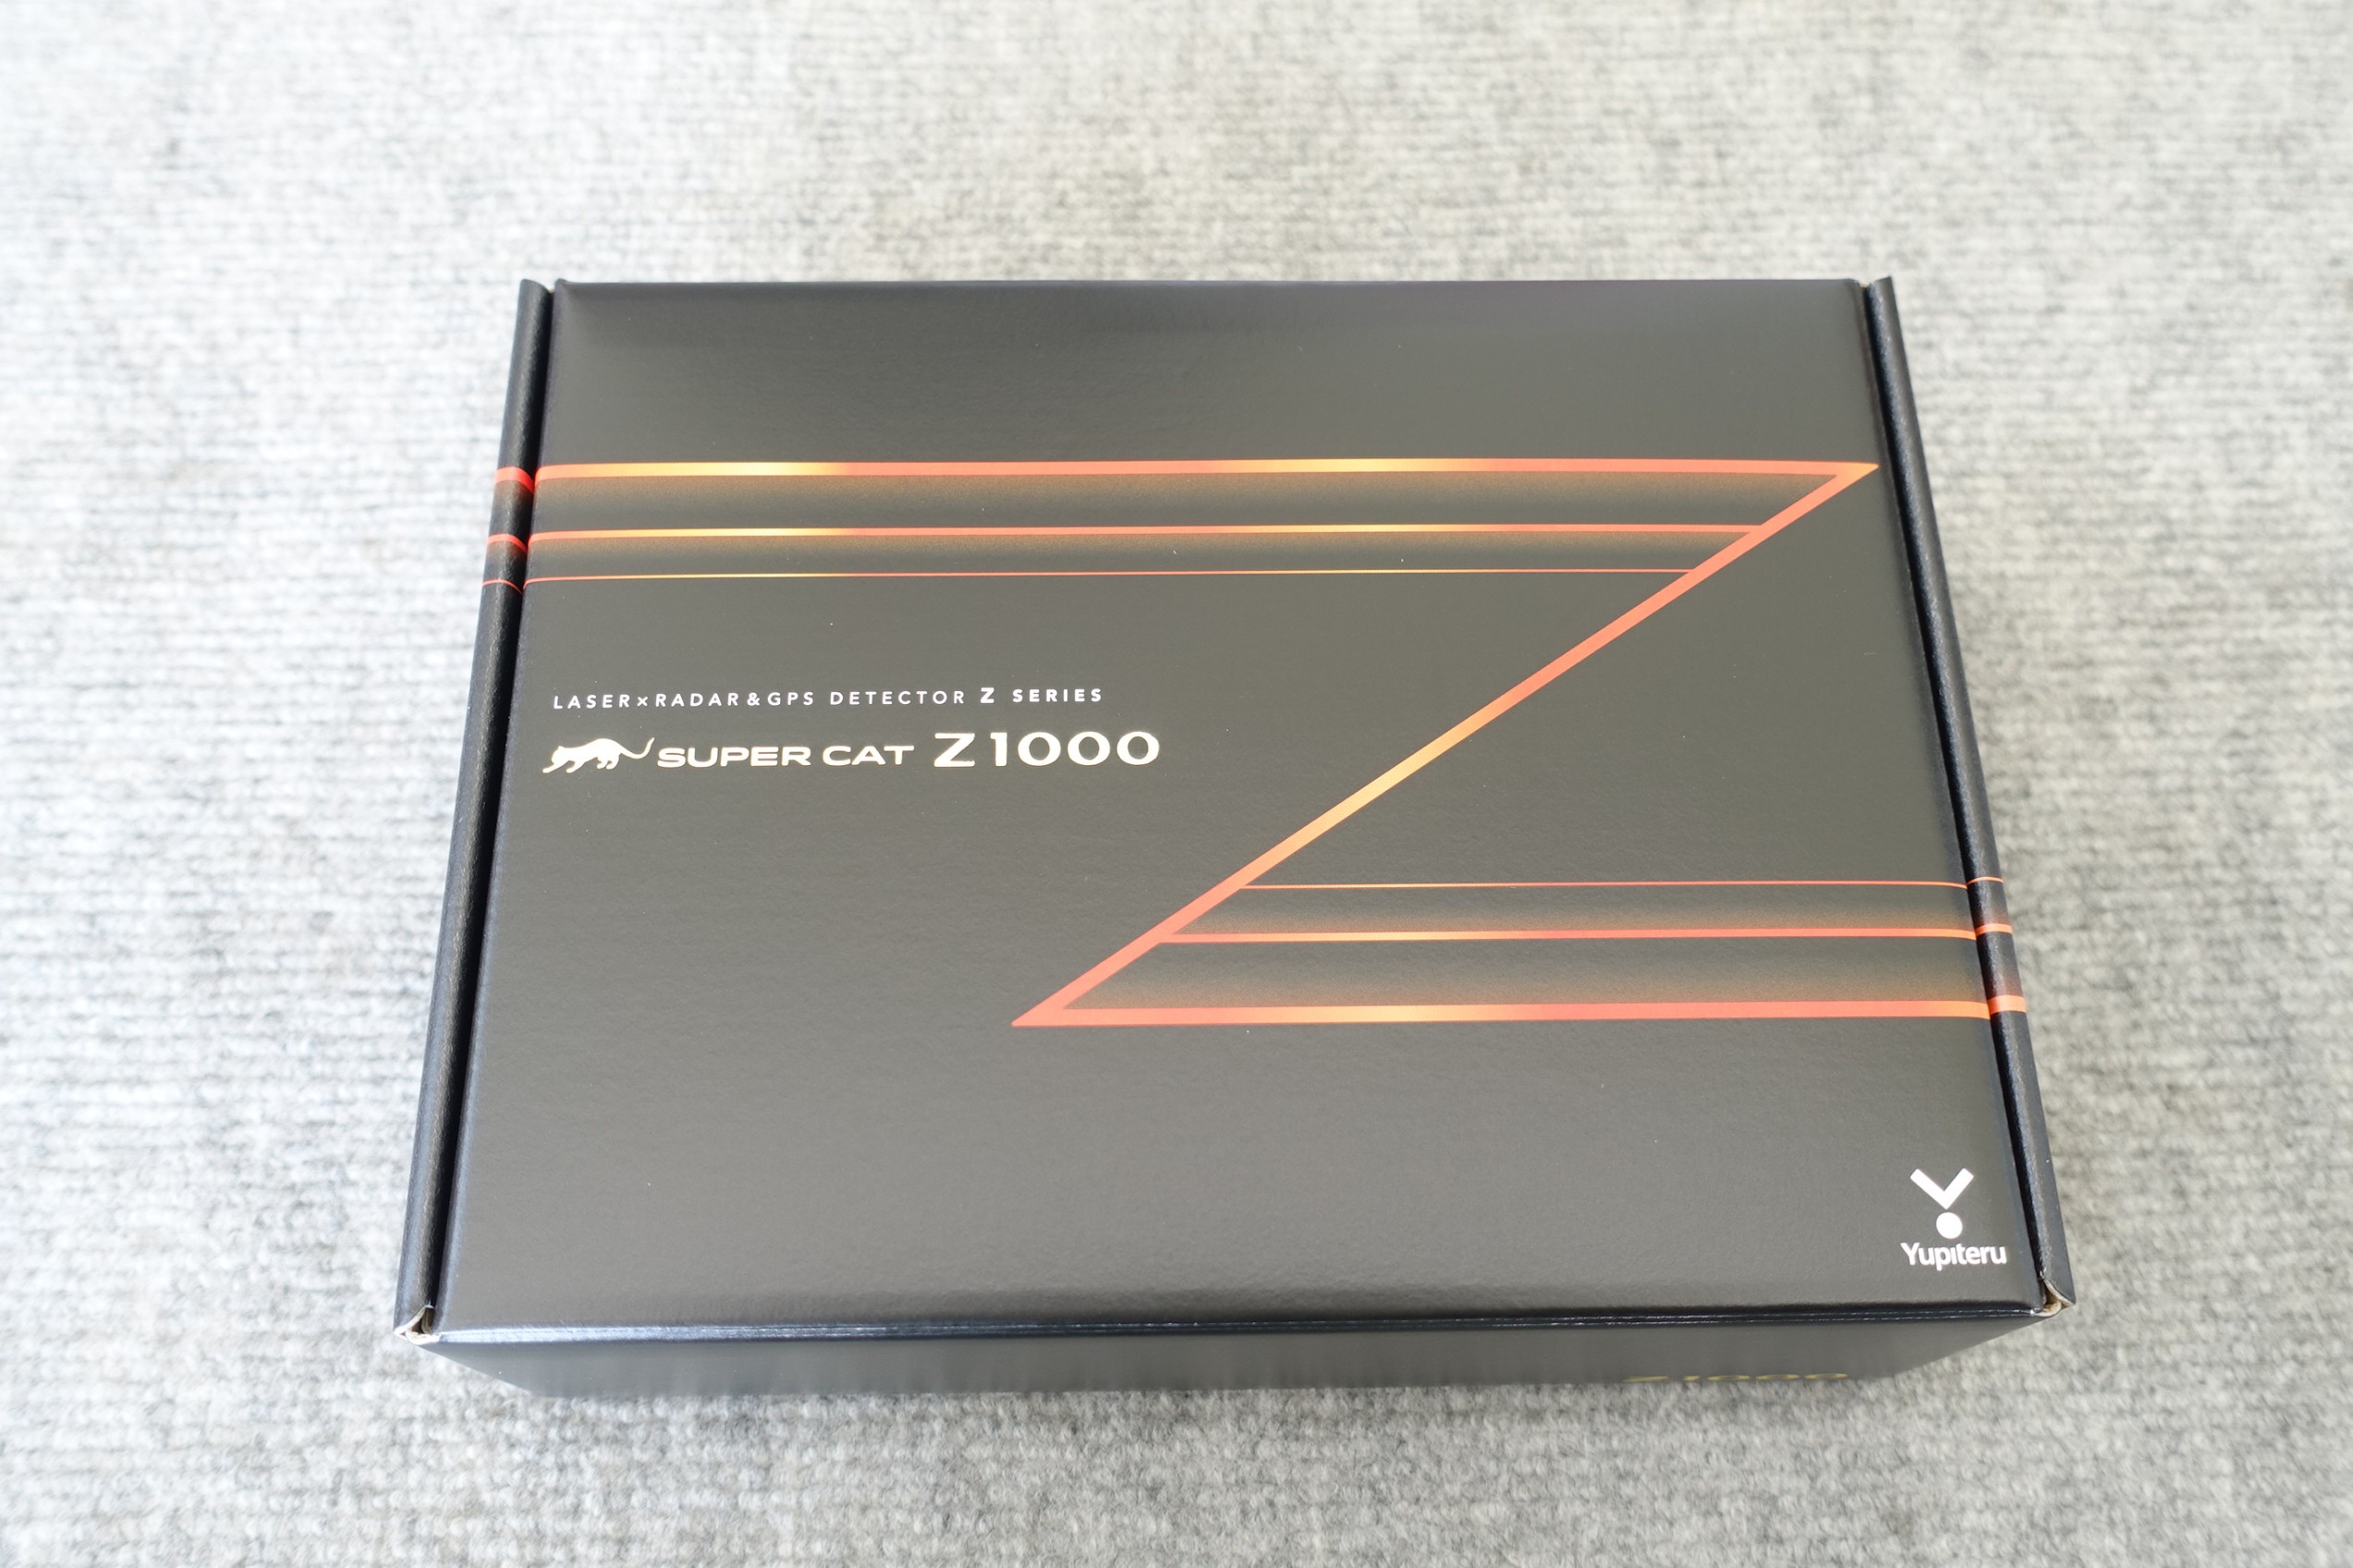 ユピテル史上最強のレーザー探知性能「ユピテル指定店モデル Z1000」を